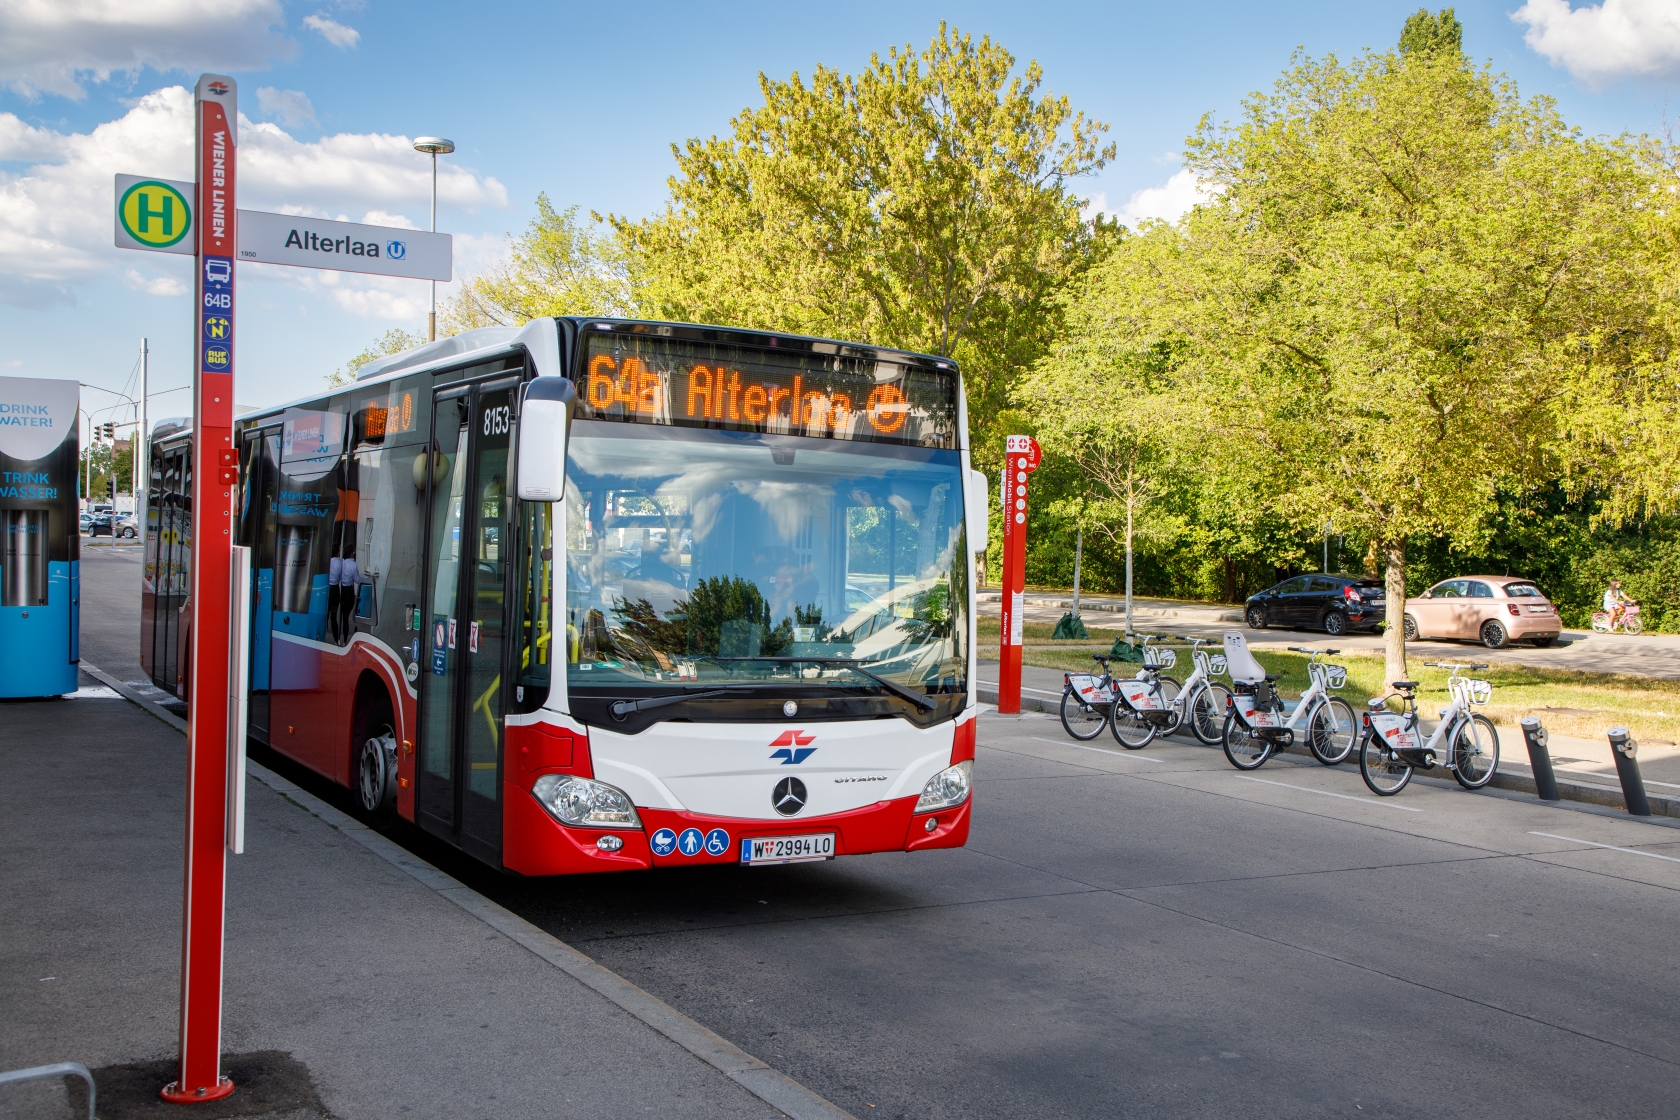 Liesing wächst und das Öffi-Netz wächst mit. Die Wiener Linien erweitern ihr Busnetz in Liesing, um die Fahrgäste noch besser an U-, S- und Badner Bahn anzuschließen. Dafür werden zwei Buslinien neu geschaffen - 61B und 64B - und zwei bestehende Linien neu organisiert - 61A und 64A. 